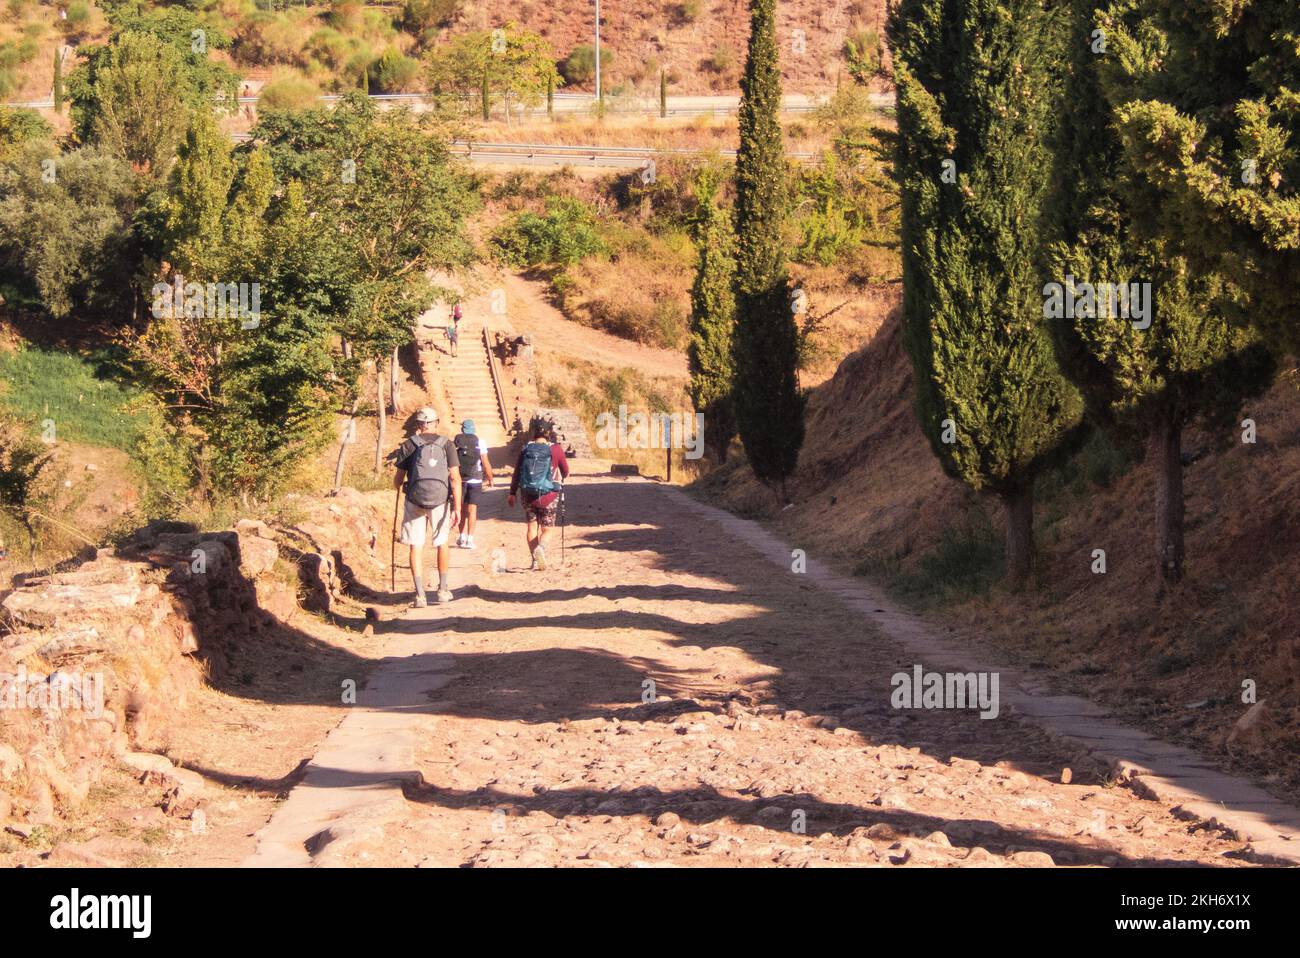 Più vecchio del Camino de Santiago. Fuori del villaggio Cirauqui il St. James Way utilizza una vecchia strada romana. Foto Stock